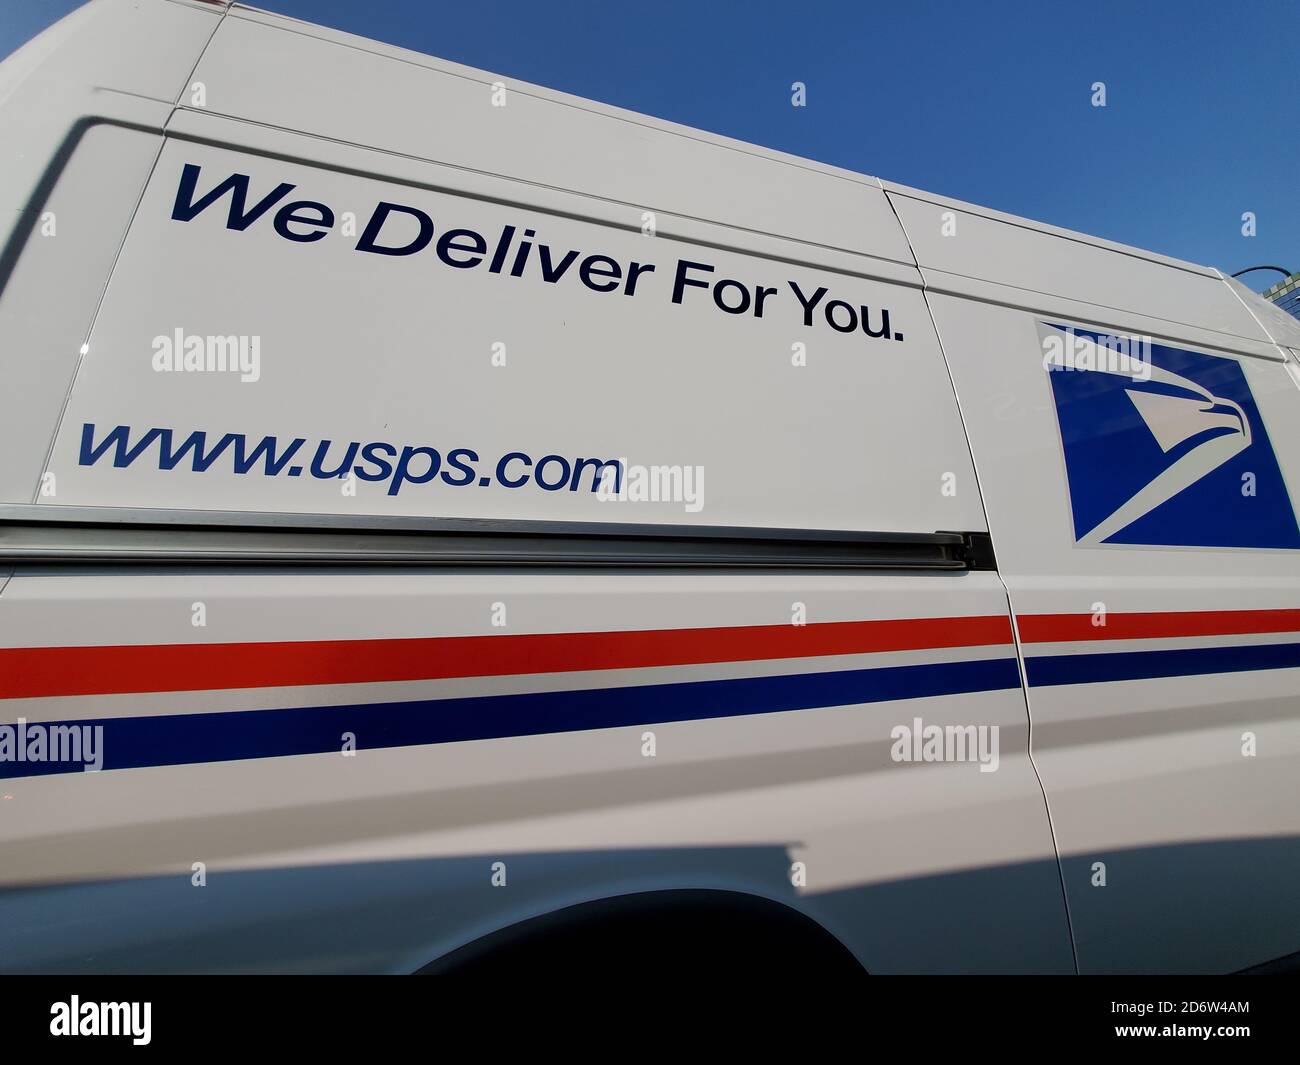 Vista grandangolare del logo sul camion USPS (United States Postal Service), Lafayette, California, 17 settembre 2020. () Foto Stock